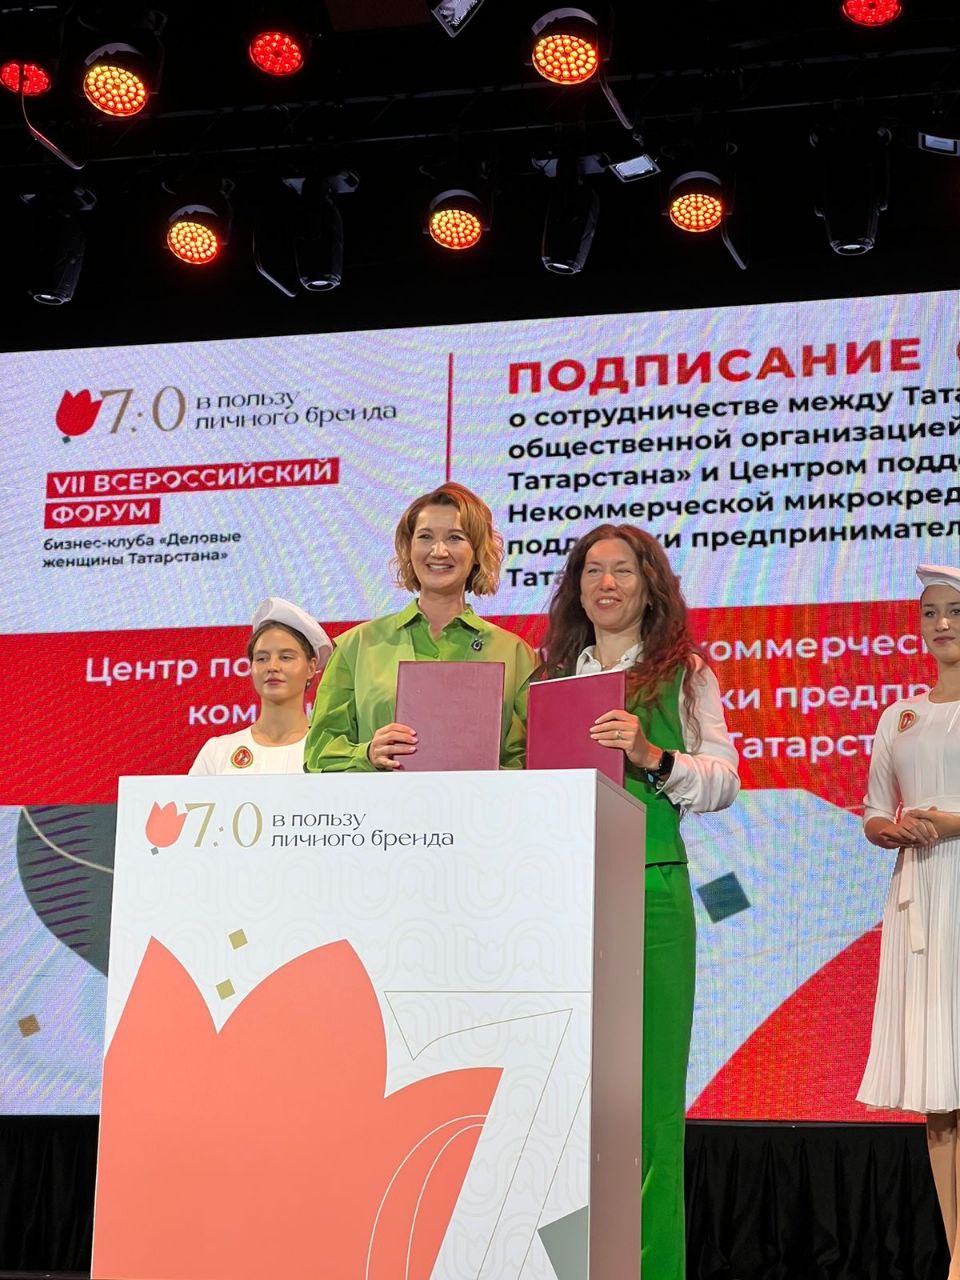 Центр поддержки экспорта подписал соглашение о сотрудничество Татарстанской региональной общественной организацией «Деловые женщины Татарстана»